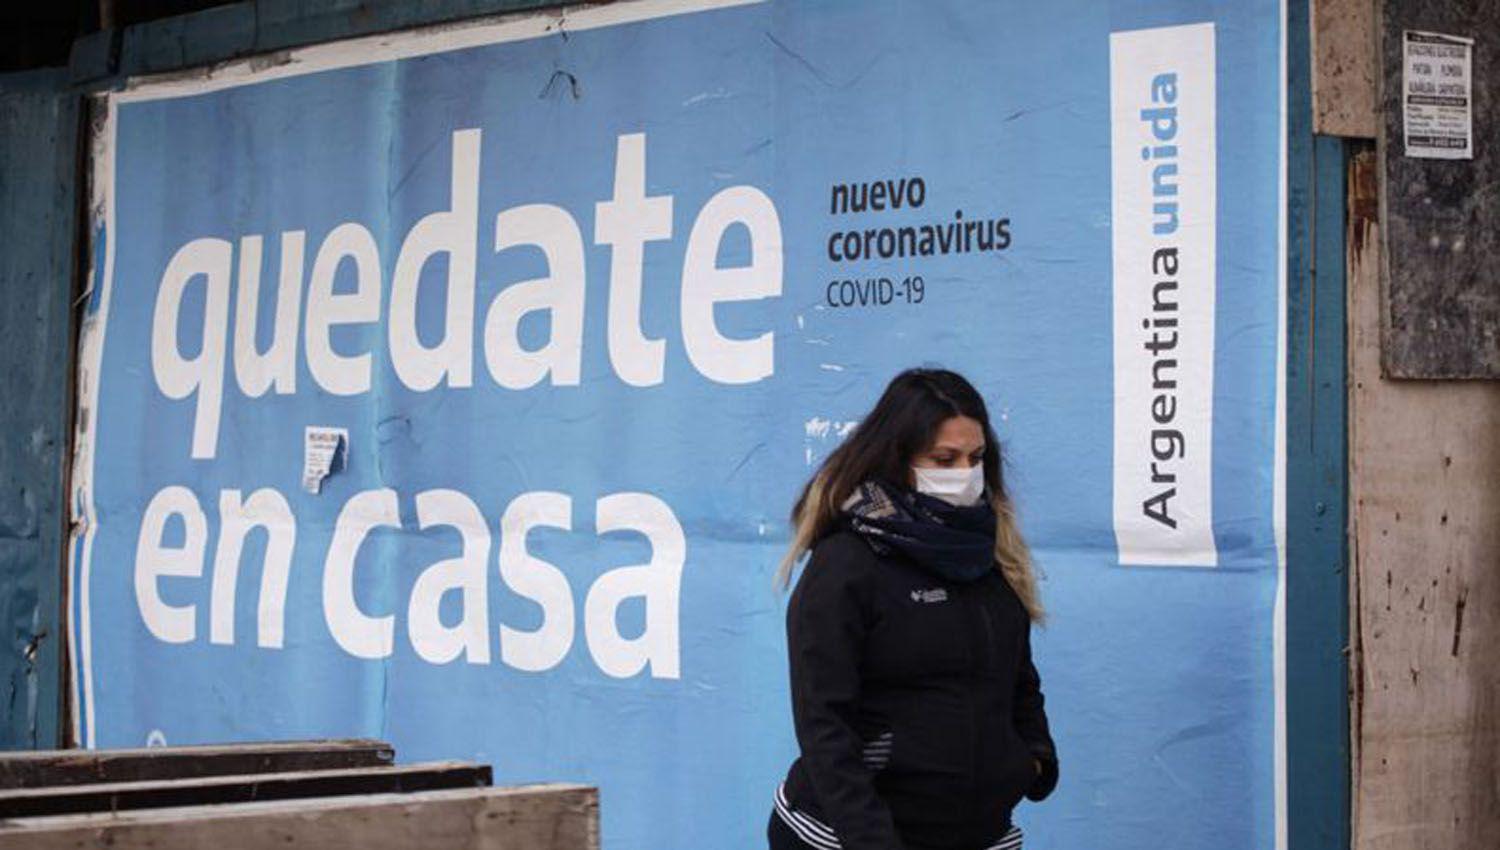 Coronavirus en la Argentina- Confirman 135 muertes y 10356 contagios